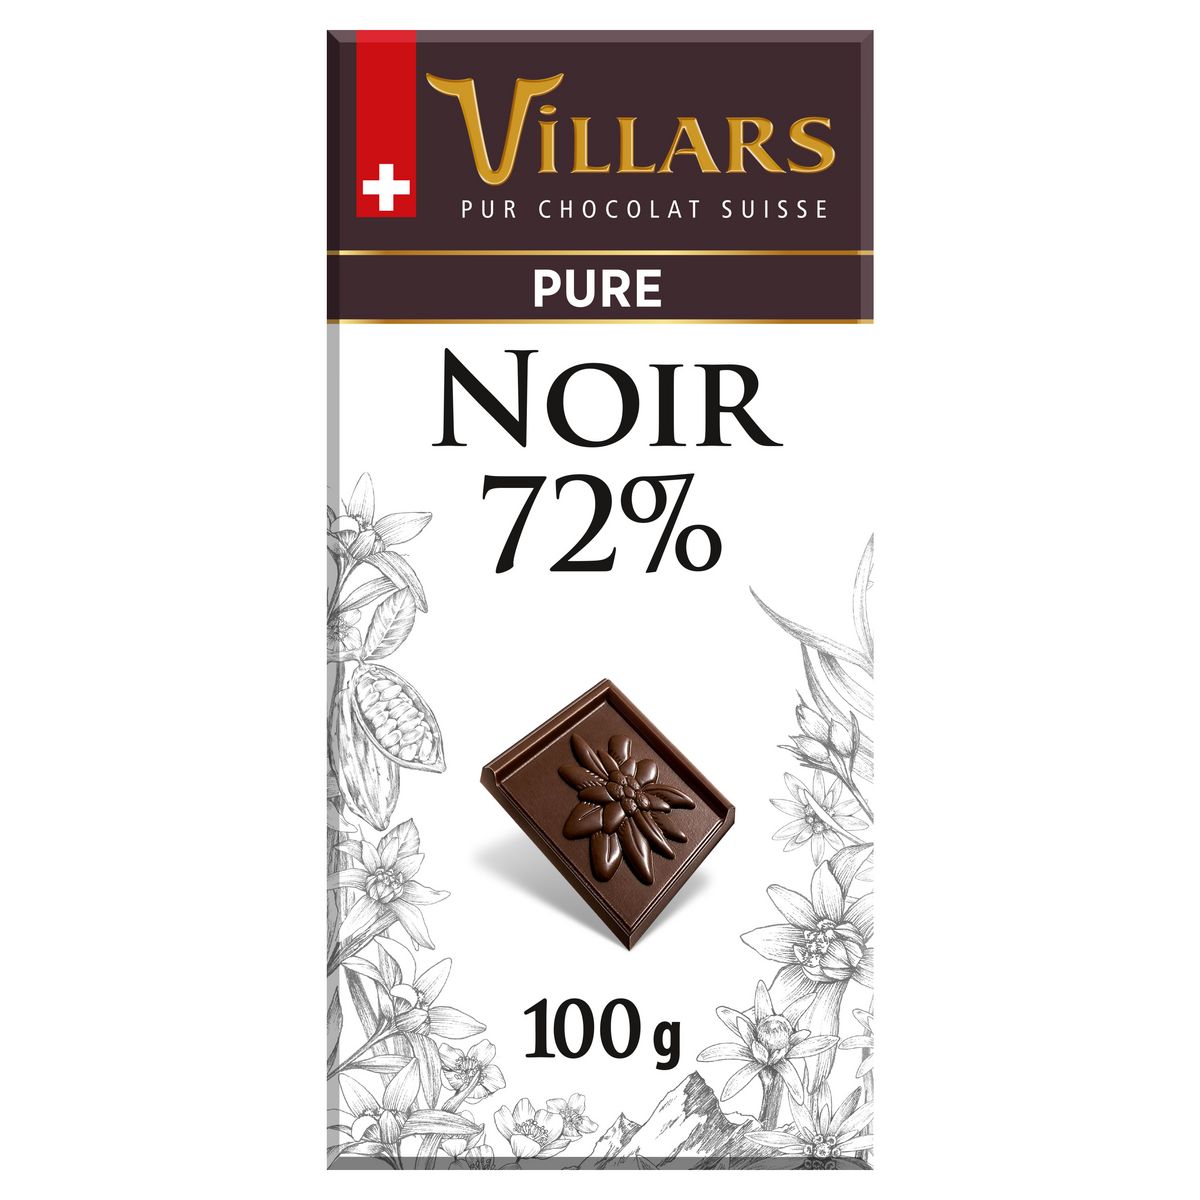 VILLARS Tablette de chocolat noir 72% suisse dégustation 1 pièce 100g